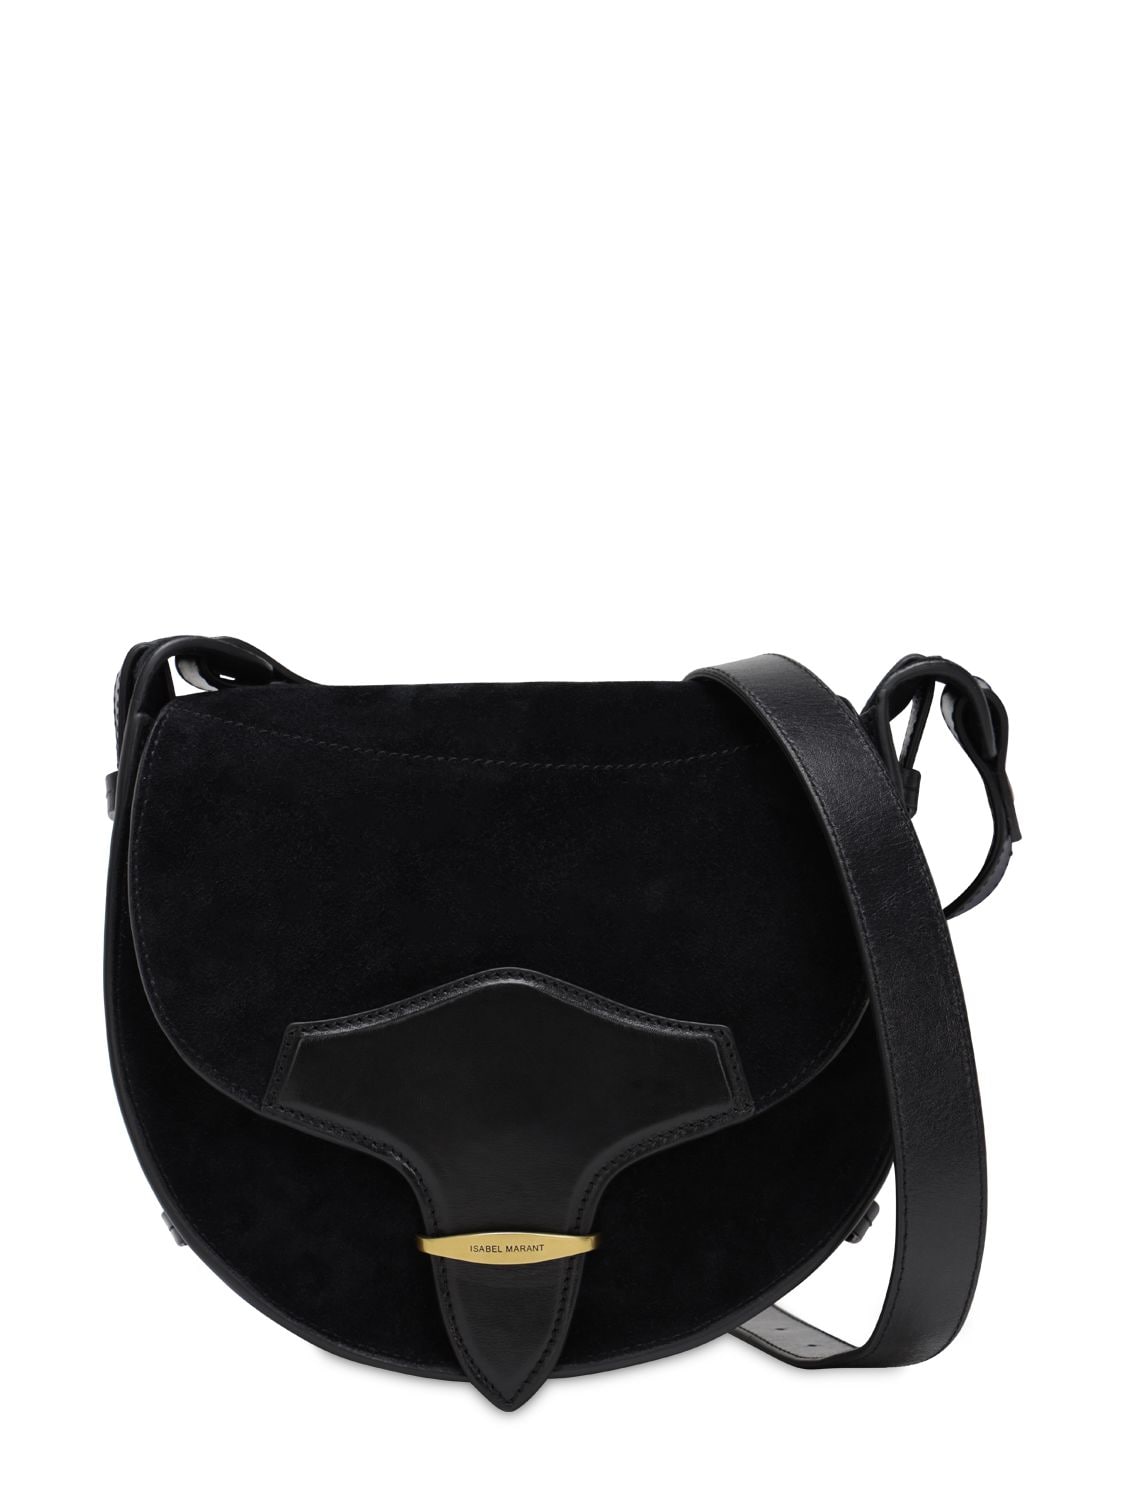 Isabel Marant Botsy Suede Leather Shoulder Bag In Black | ModeSens